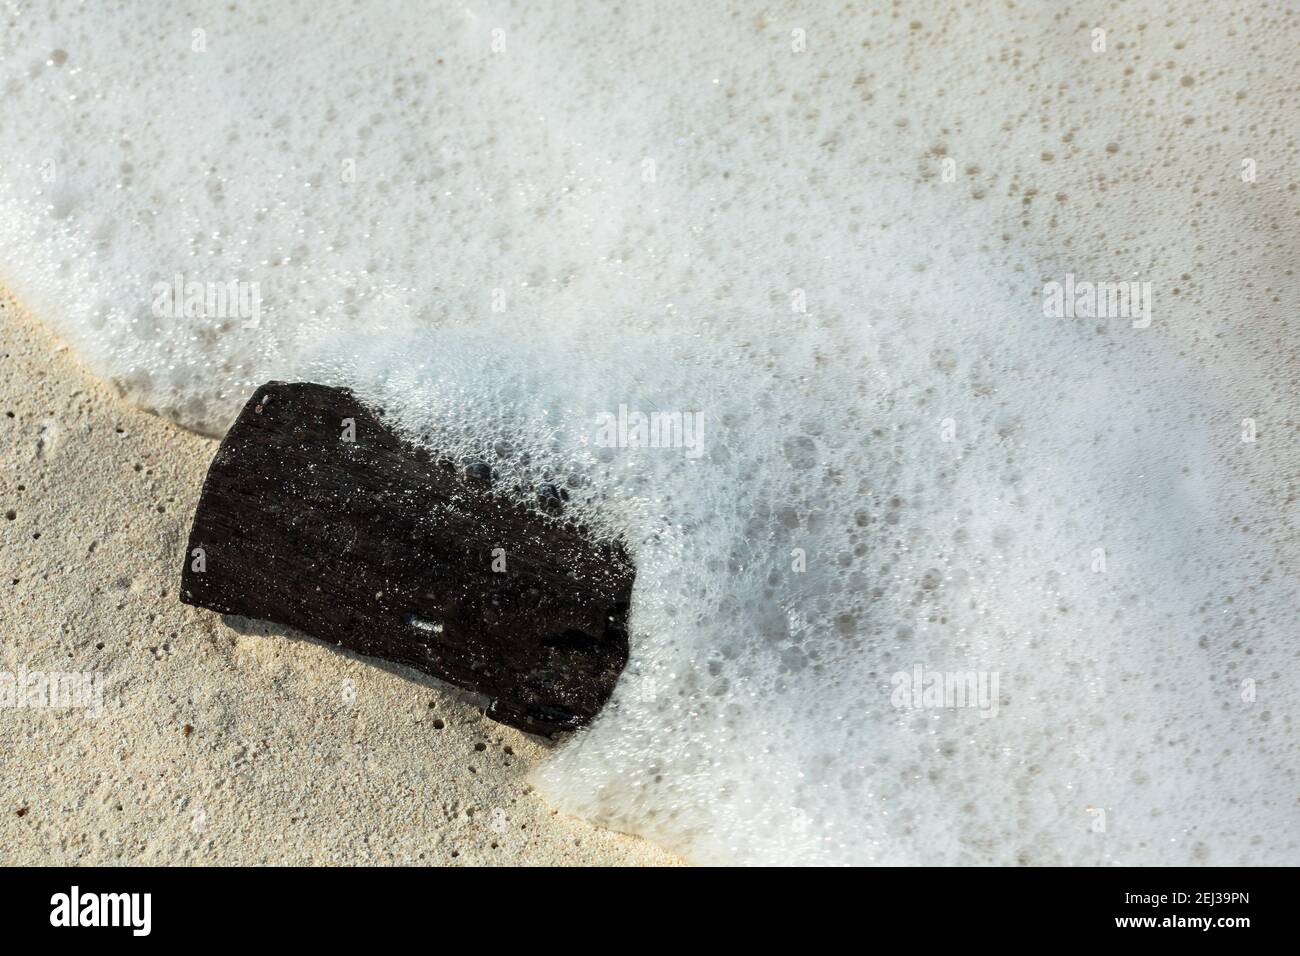 Eine schwarze Kohle an Land gewaschen Stockfoto